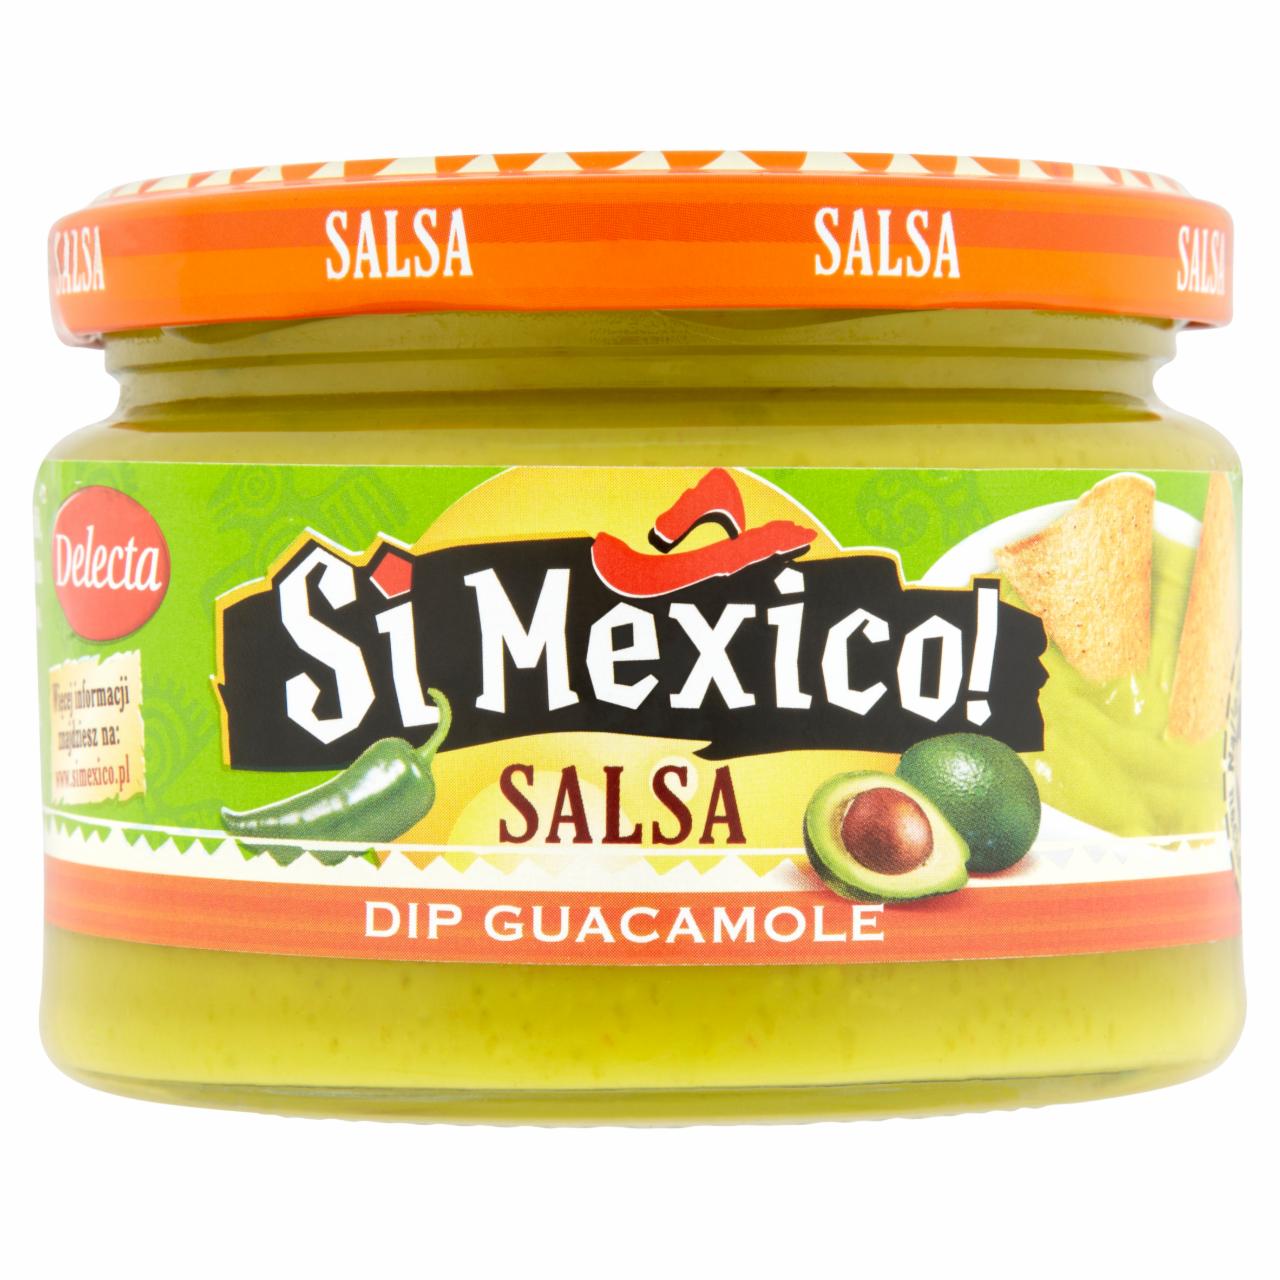 Zdjęcia - Delecta Si Mexico! Salsa Dip guacamole 250 g